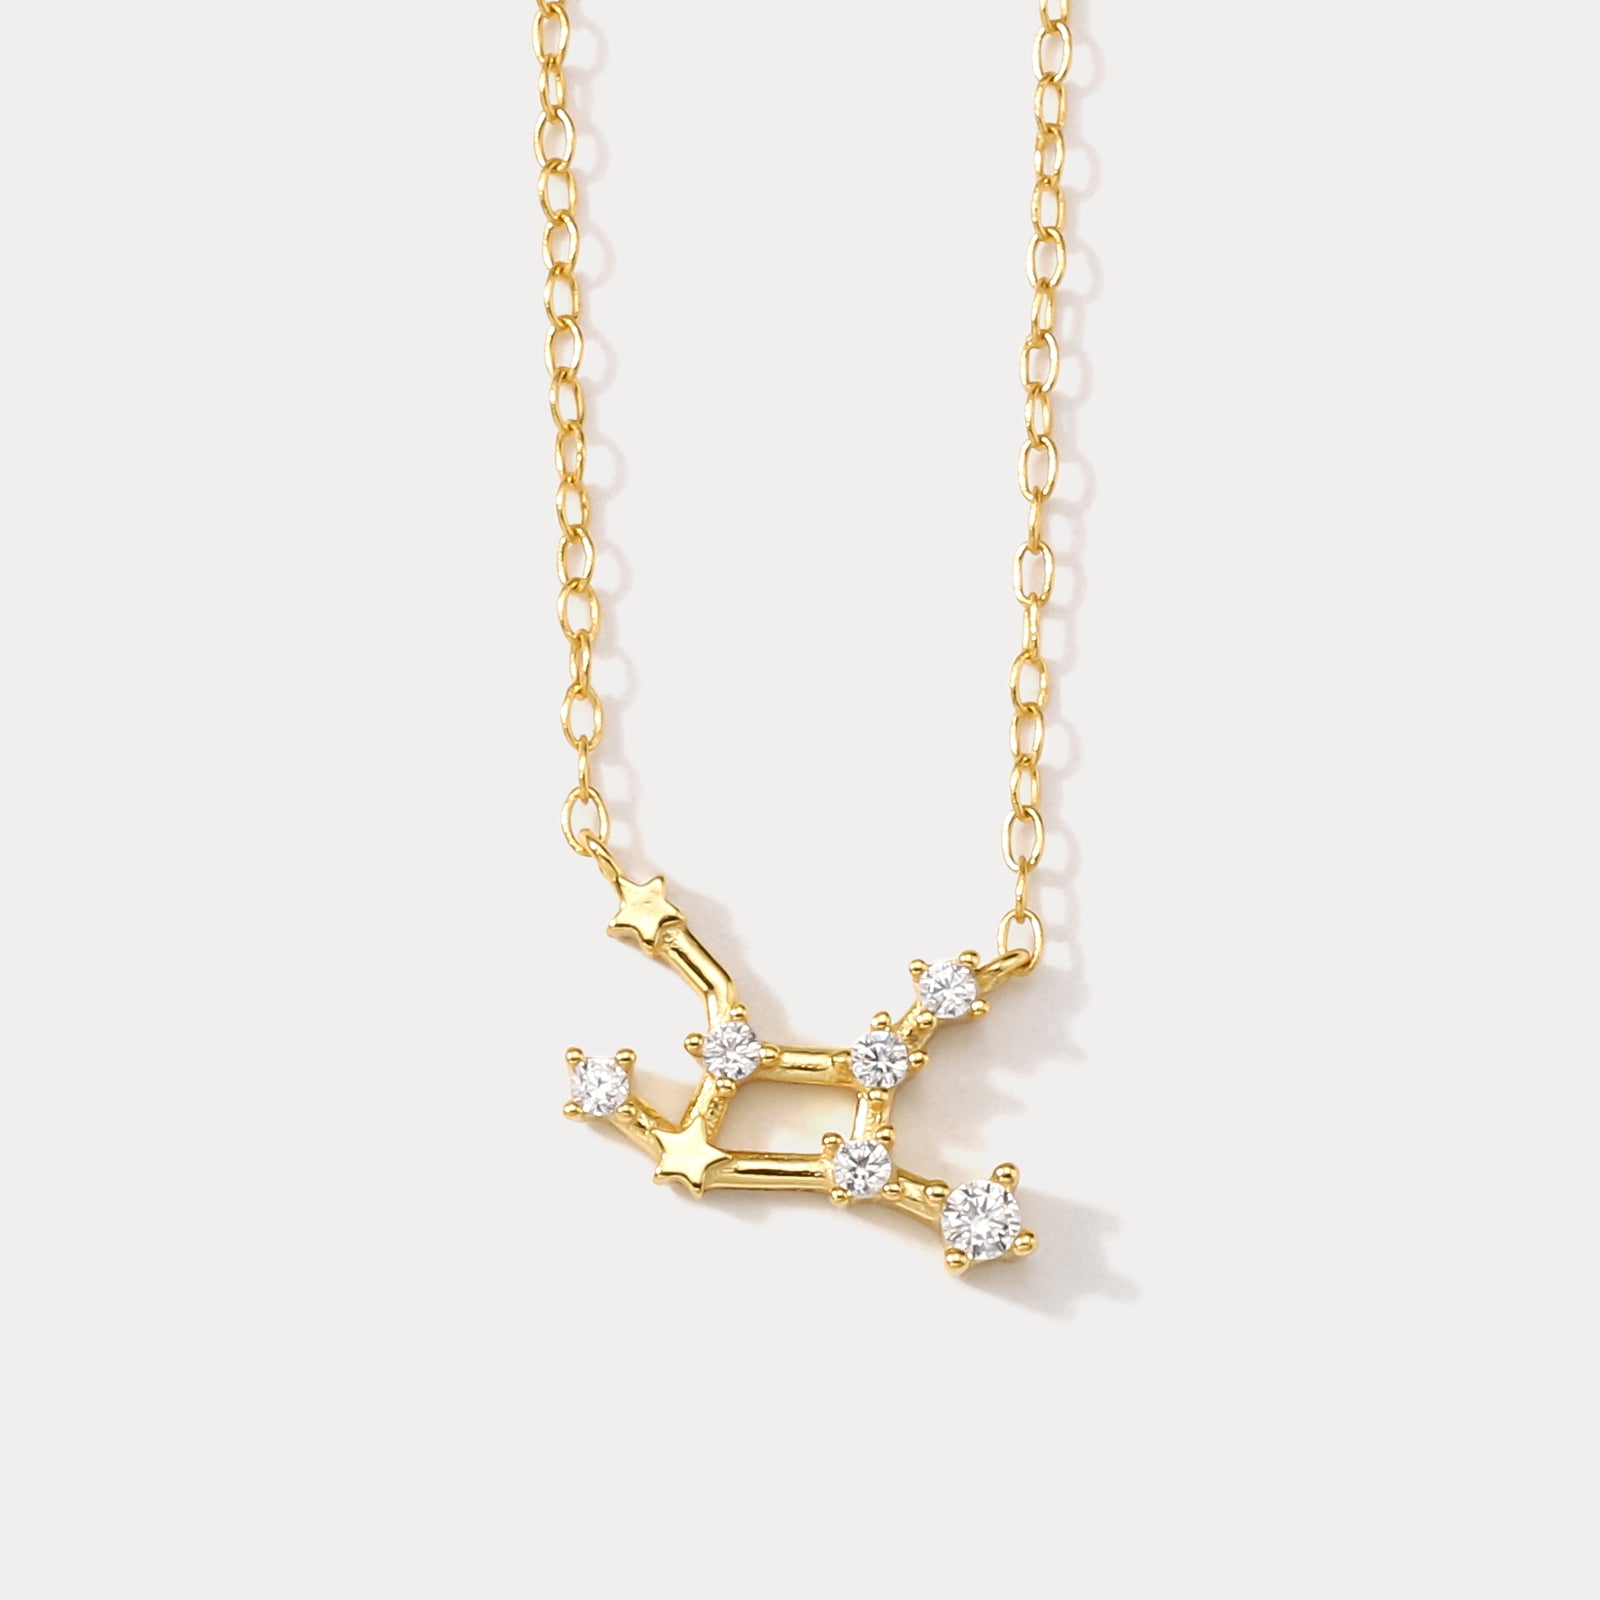 Selenichast Constellation Silver Necklace - Virgo